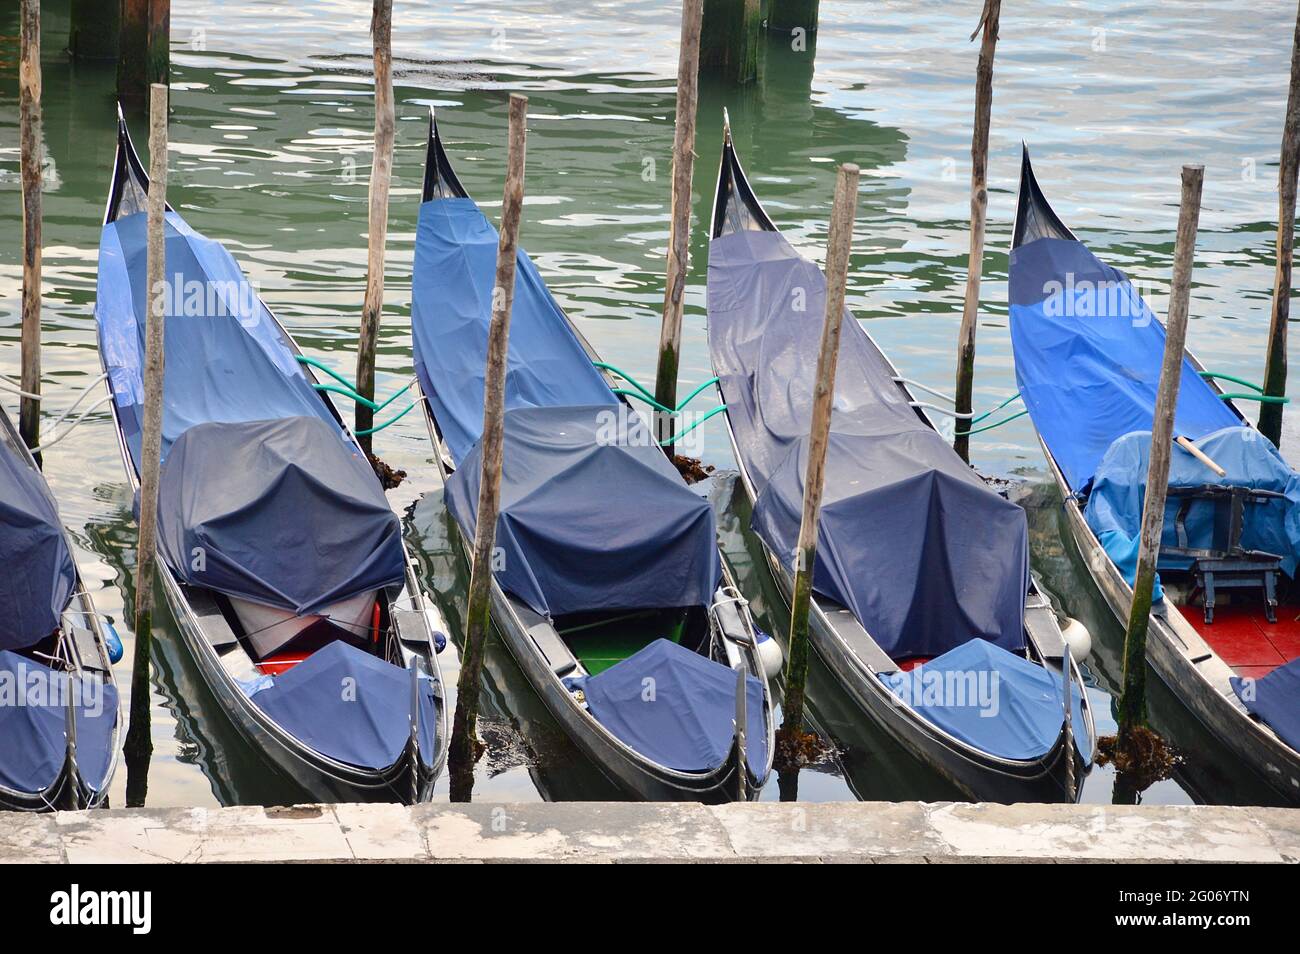 Venezianische Gondeln ruhen aufgrund des Touristenmangels, sind vereinsatt und abgedeckt Foto de stock